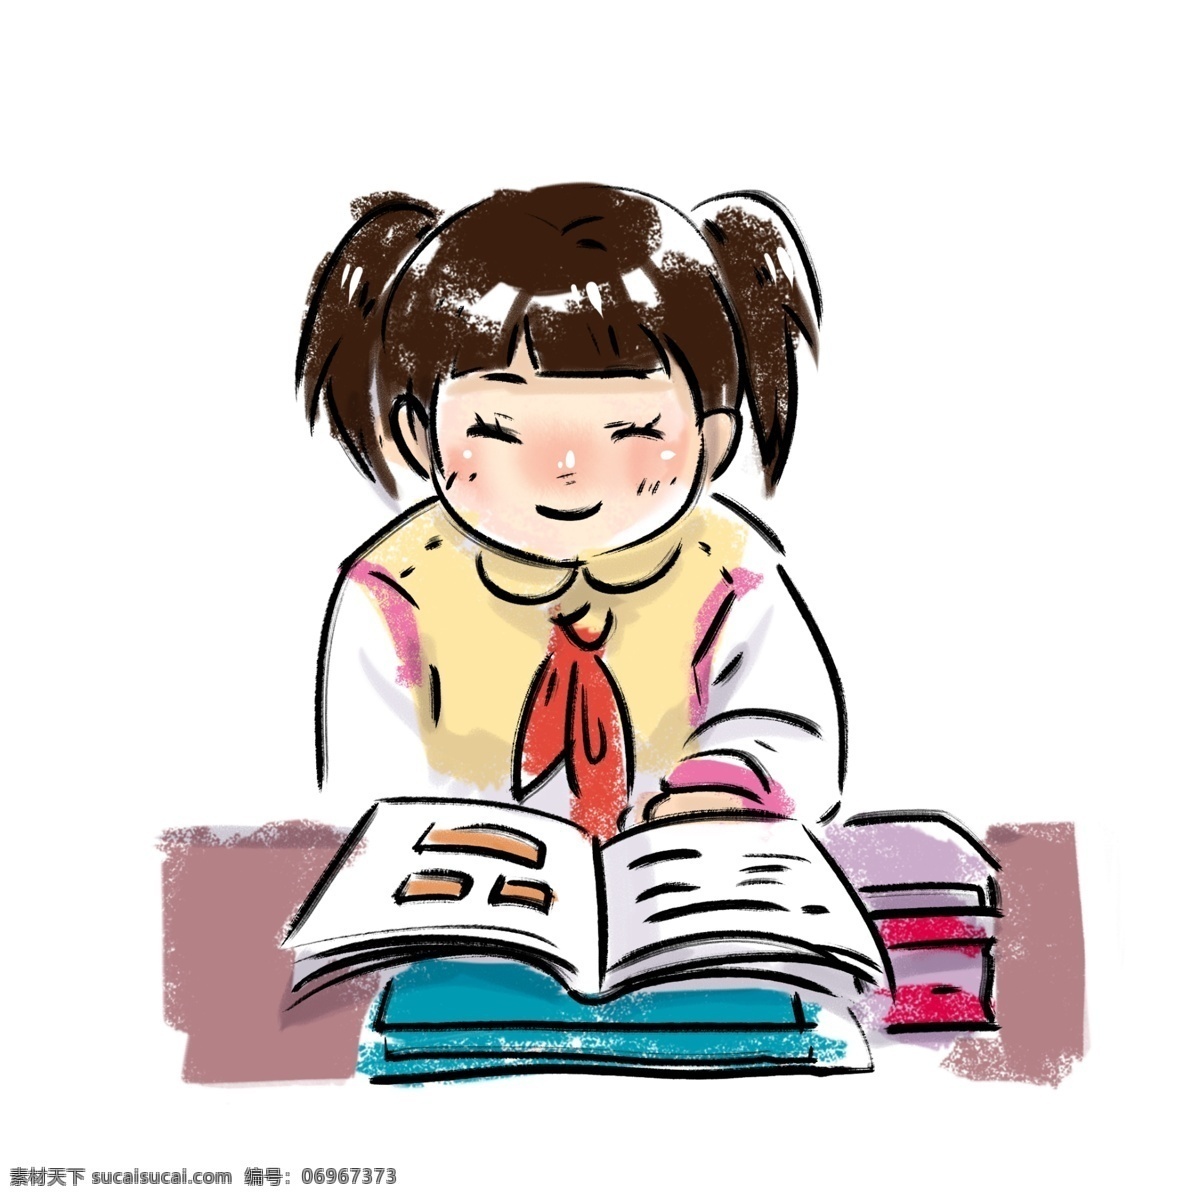 小学生 清新 校园 风 学生 女孩子 书包 上学 红领巾 校园风 女孩 孩子 小孩 课本 书本 手绘